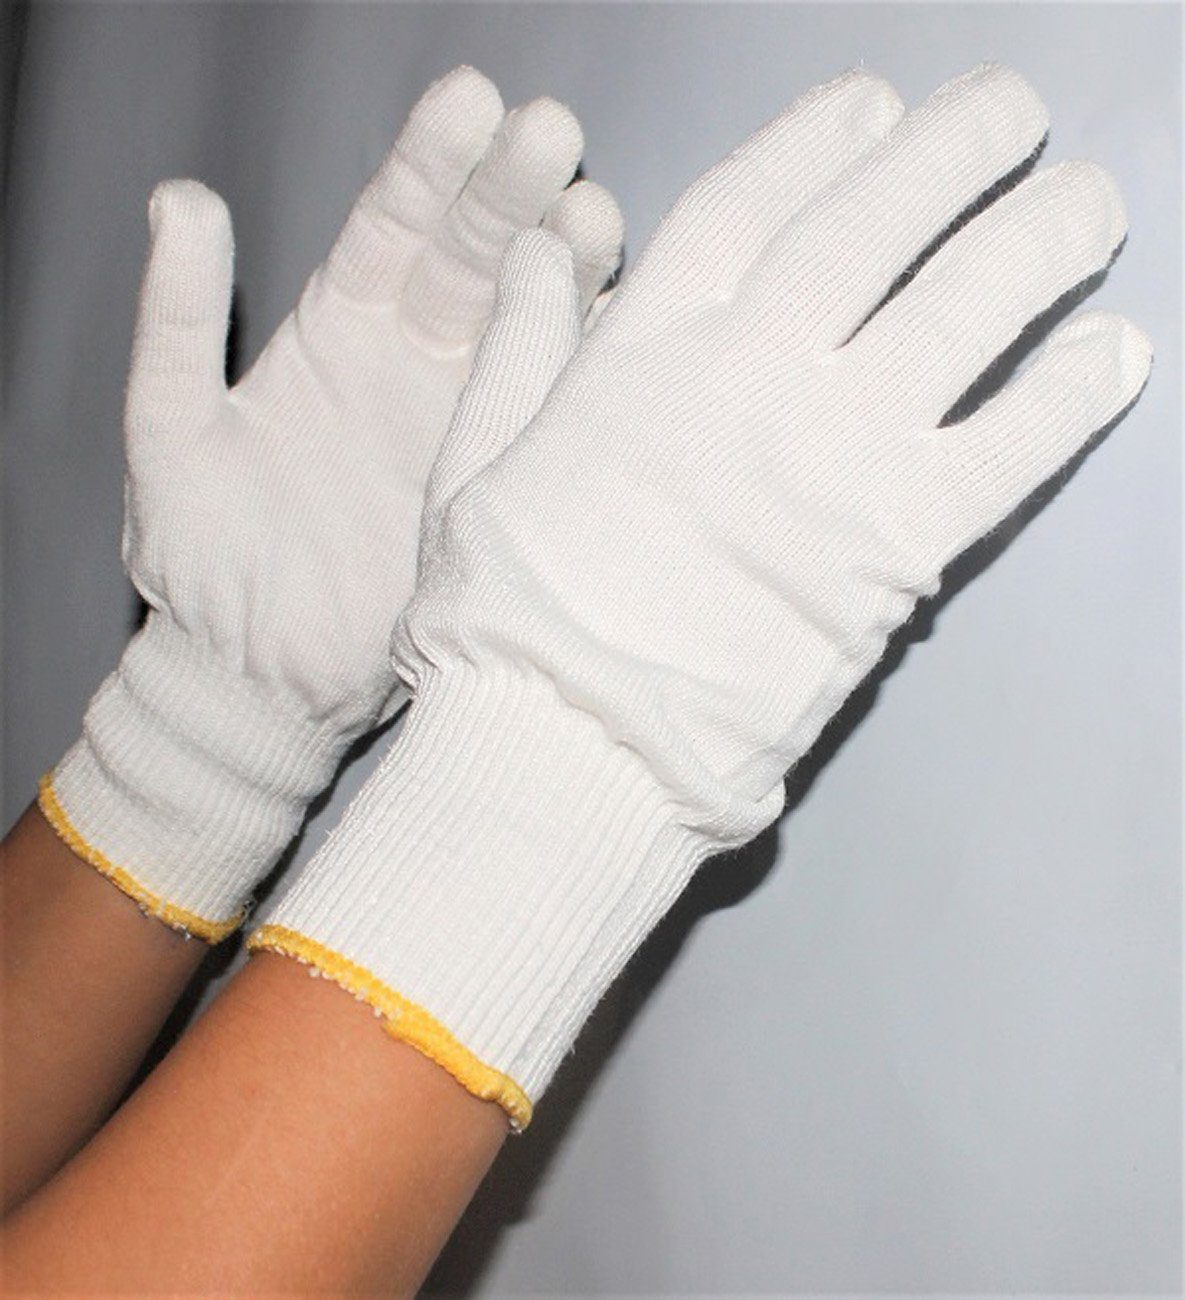 myMAW Schnittschutzhandschuhe Schnittschutzhandschuhe Paar Handschuhe 923 1 Nevocut weiß H… KCL